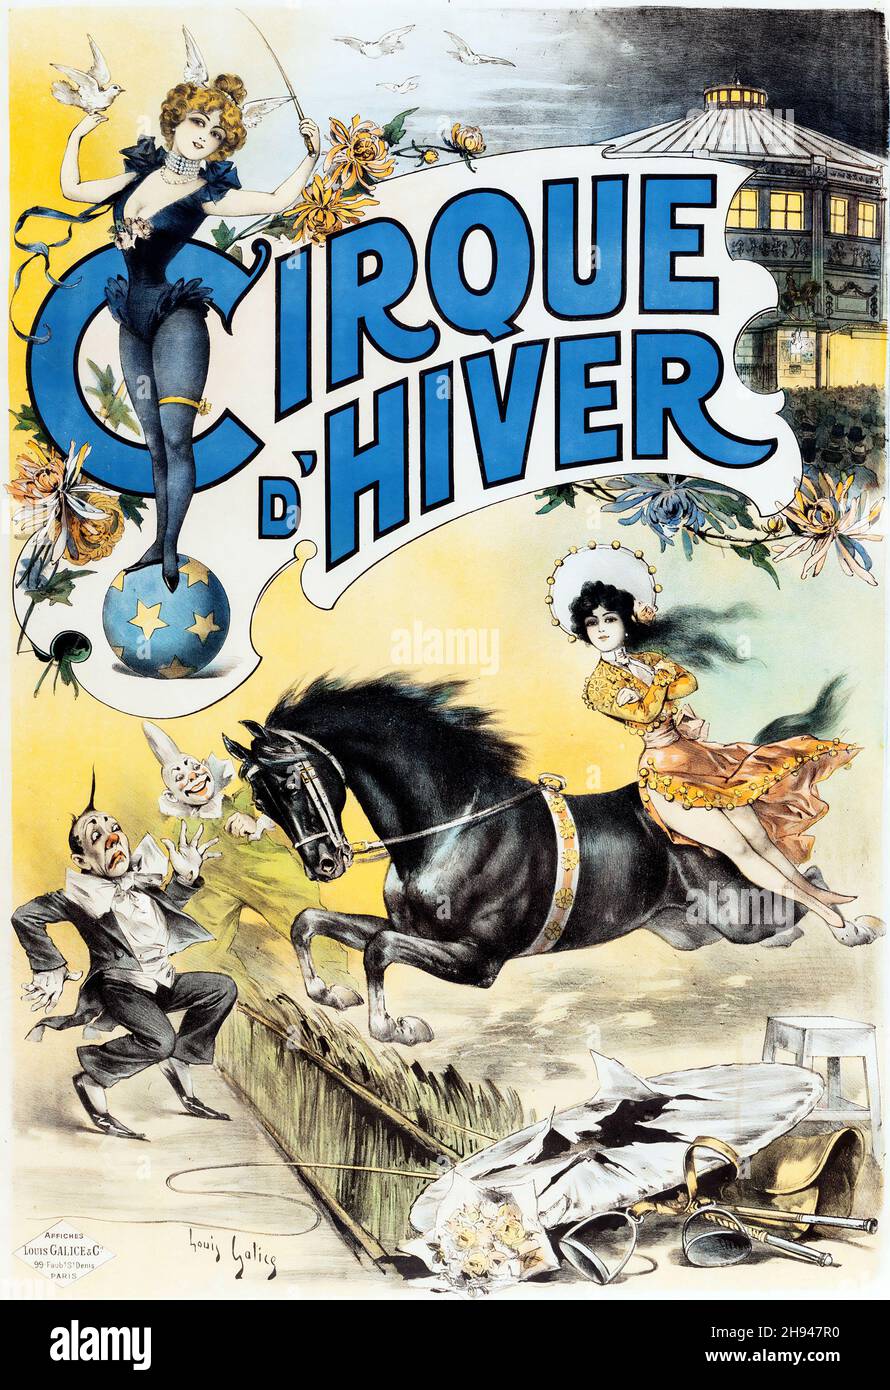 LOUIS GALICE (francese, 1771-1930). Cirque D'Hiver. Poster del circo vintage feat una signora su un cavallo spaventando un clown. Foto Stock